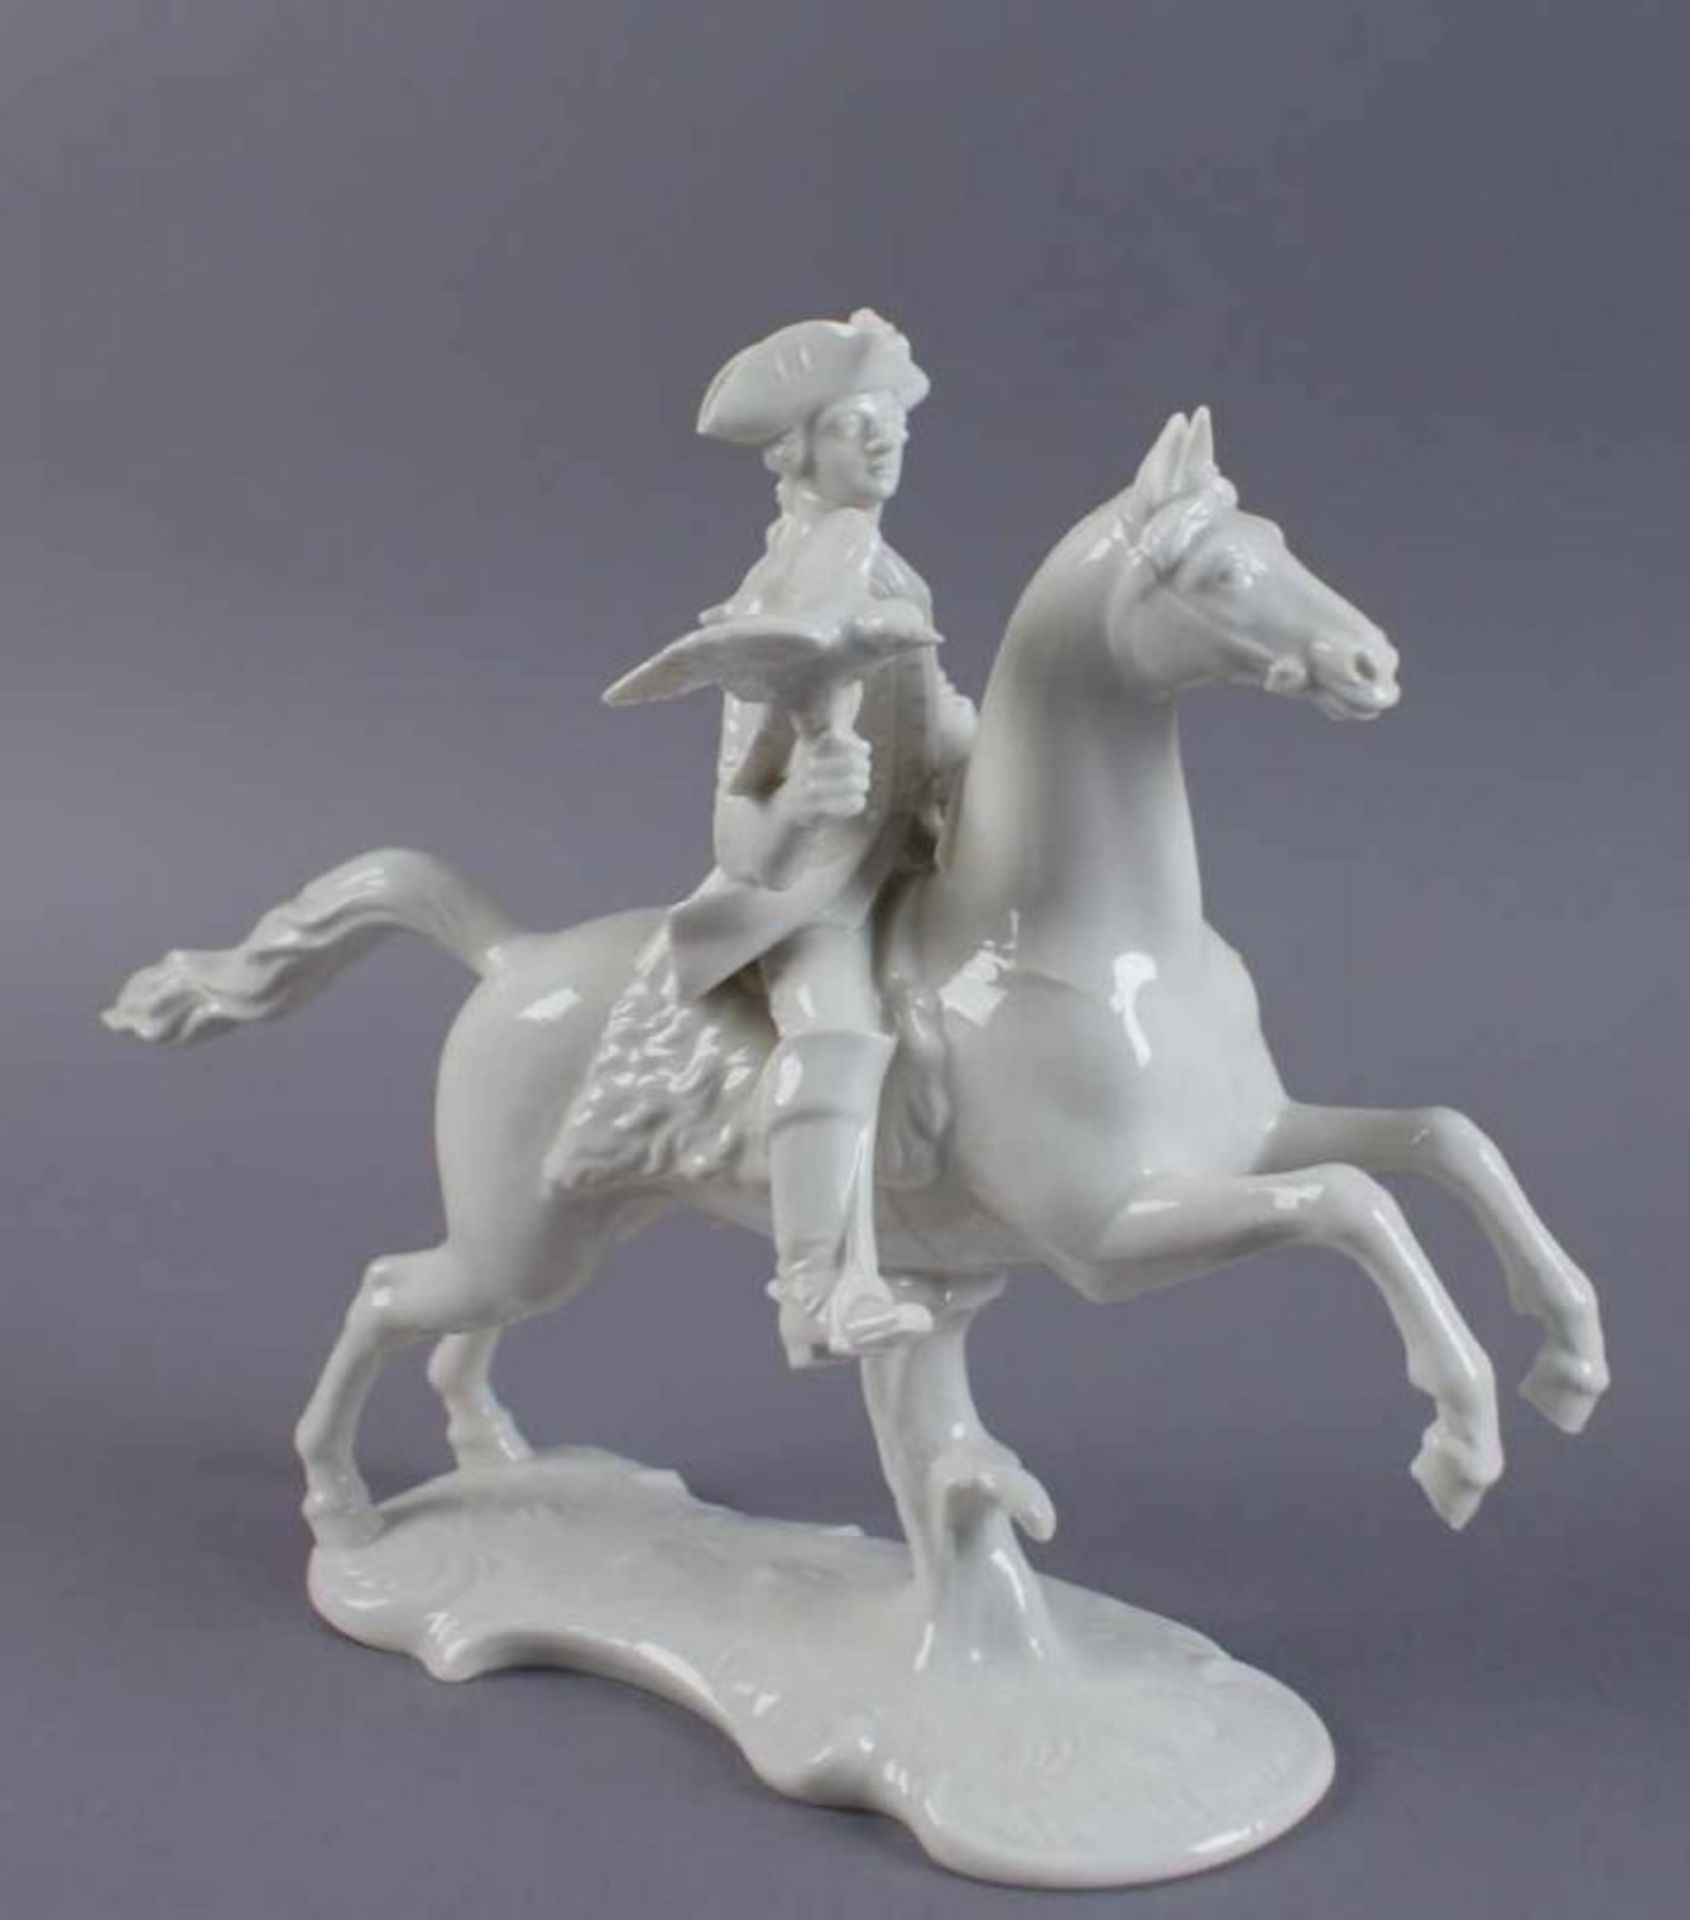 Nymphenburg Reiter zu Pferd mit Vogel in der Hand, gemarktet, weisses, durchsichtiges Porzellan, H